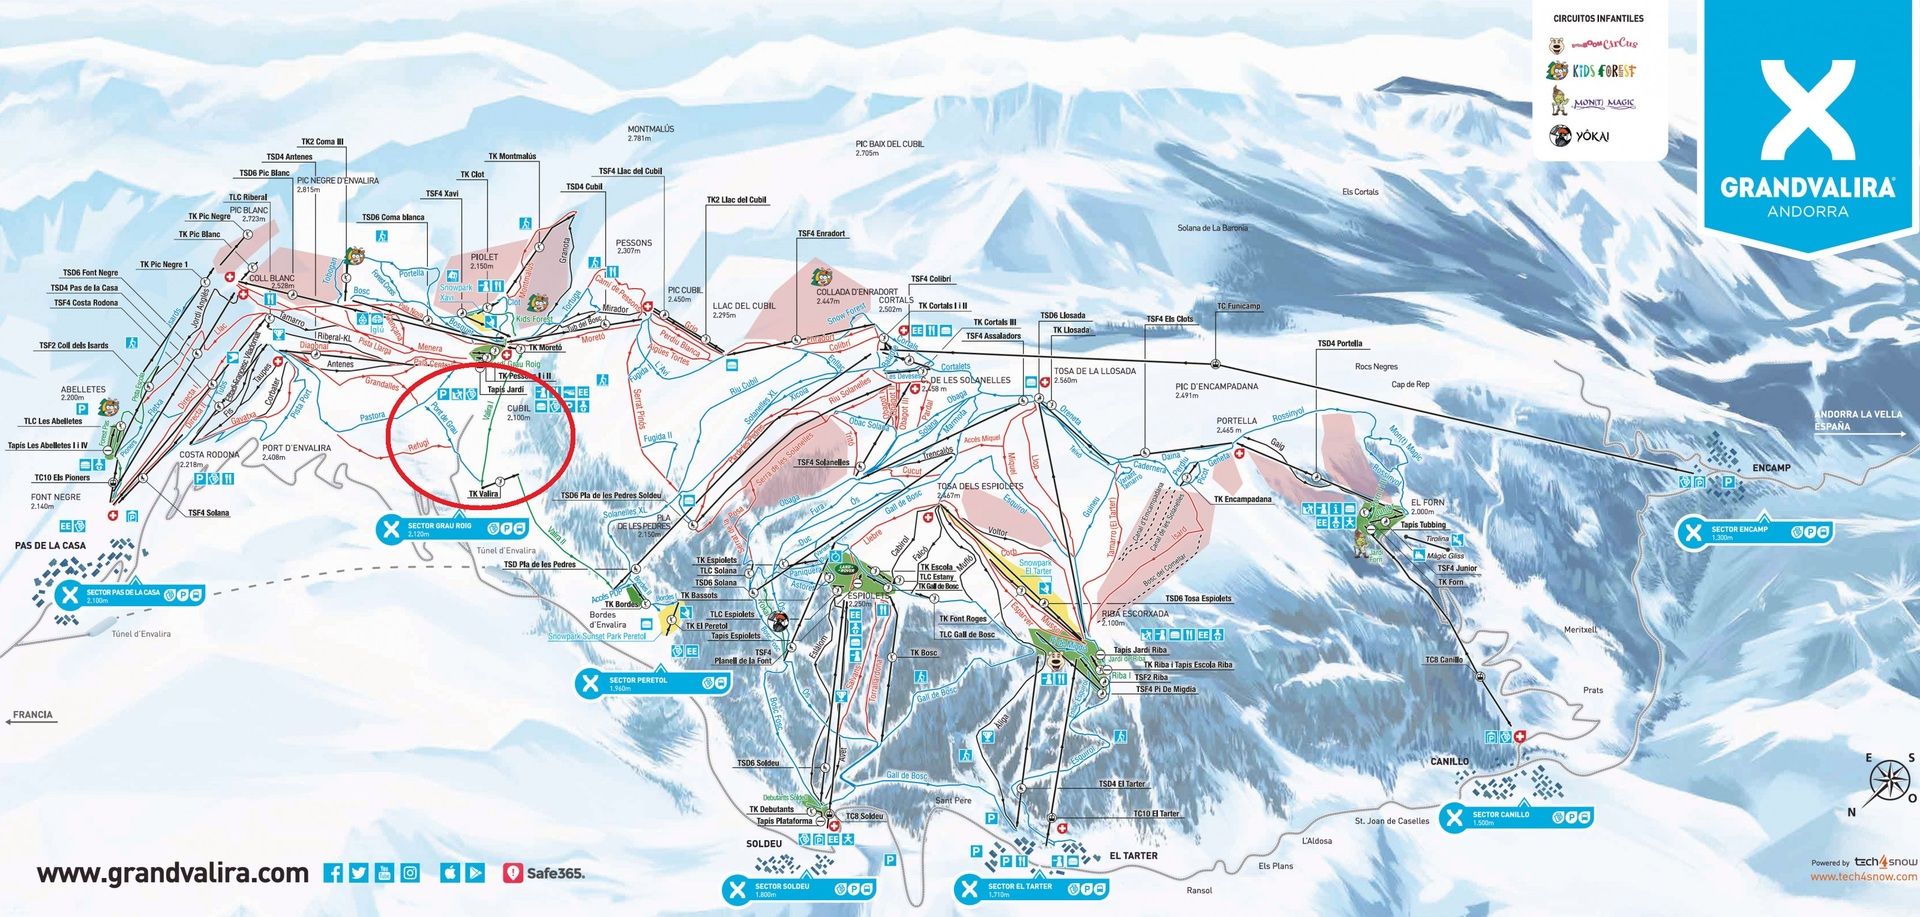 Grandvalira dos pistas nuevas de esqui